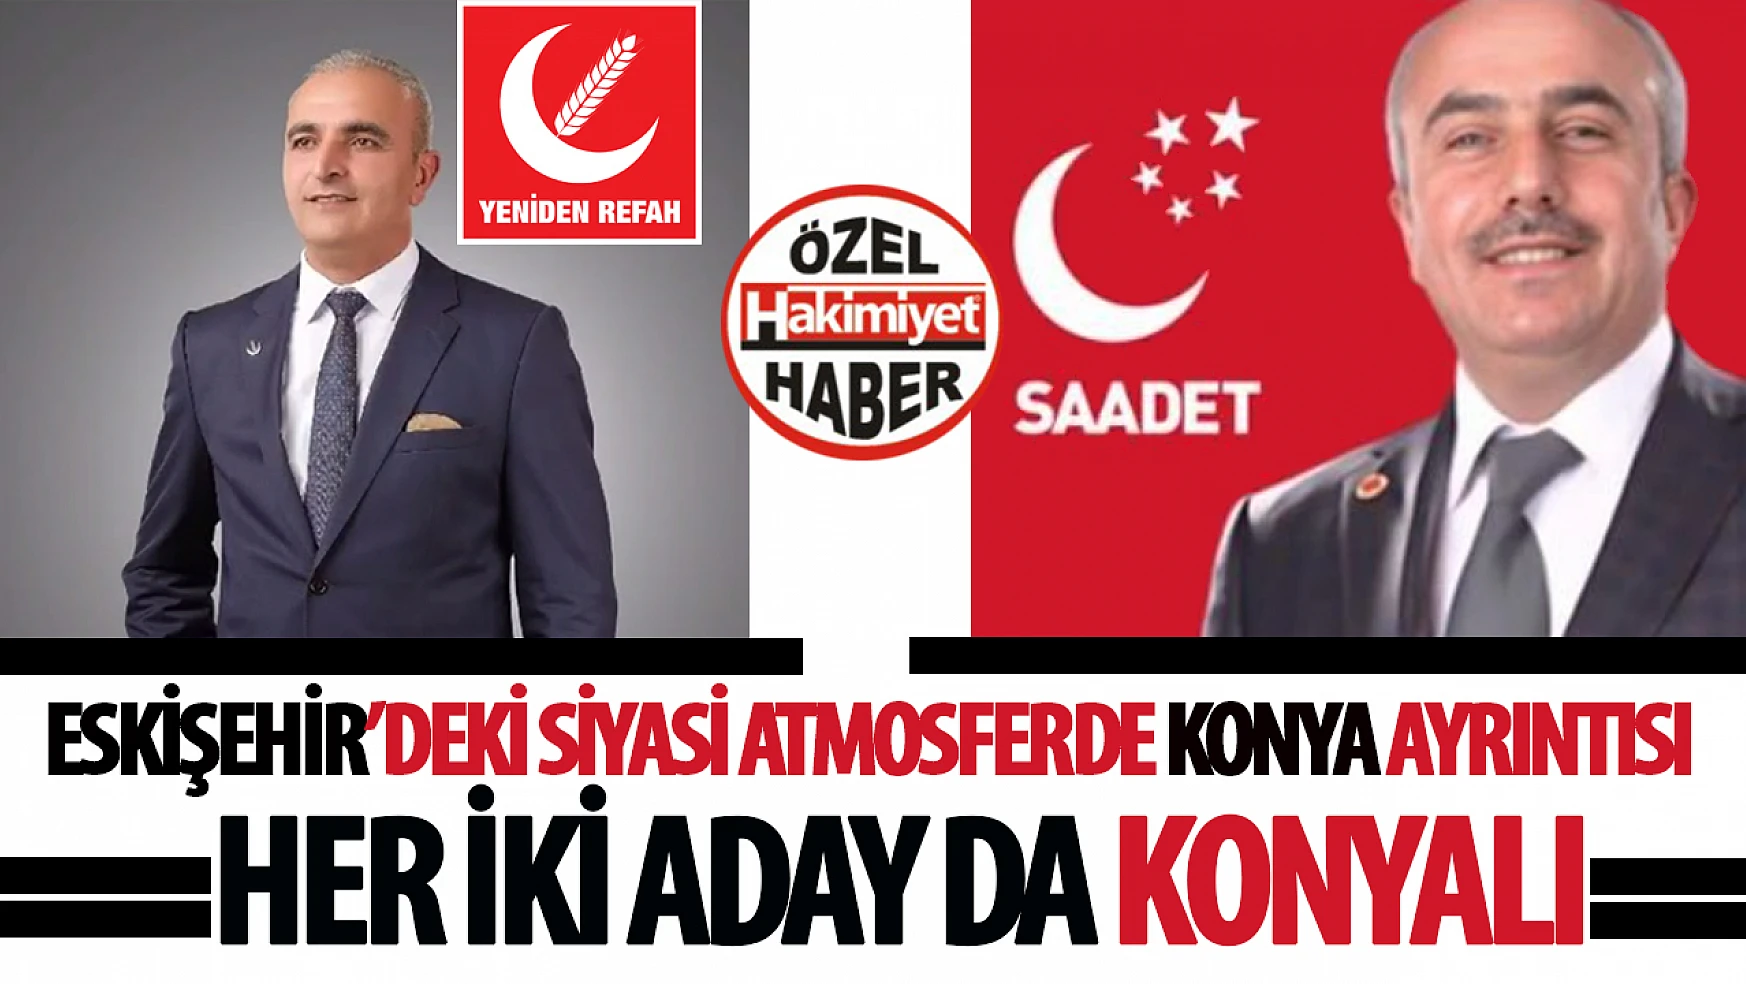 Eskişehir'de 31 Mart Yerel Seçimlerinde İki Konyalı Aday Mücadele Edecek: İdris Kaçar ve Hikmet Özkan